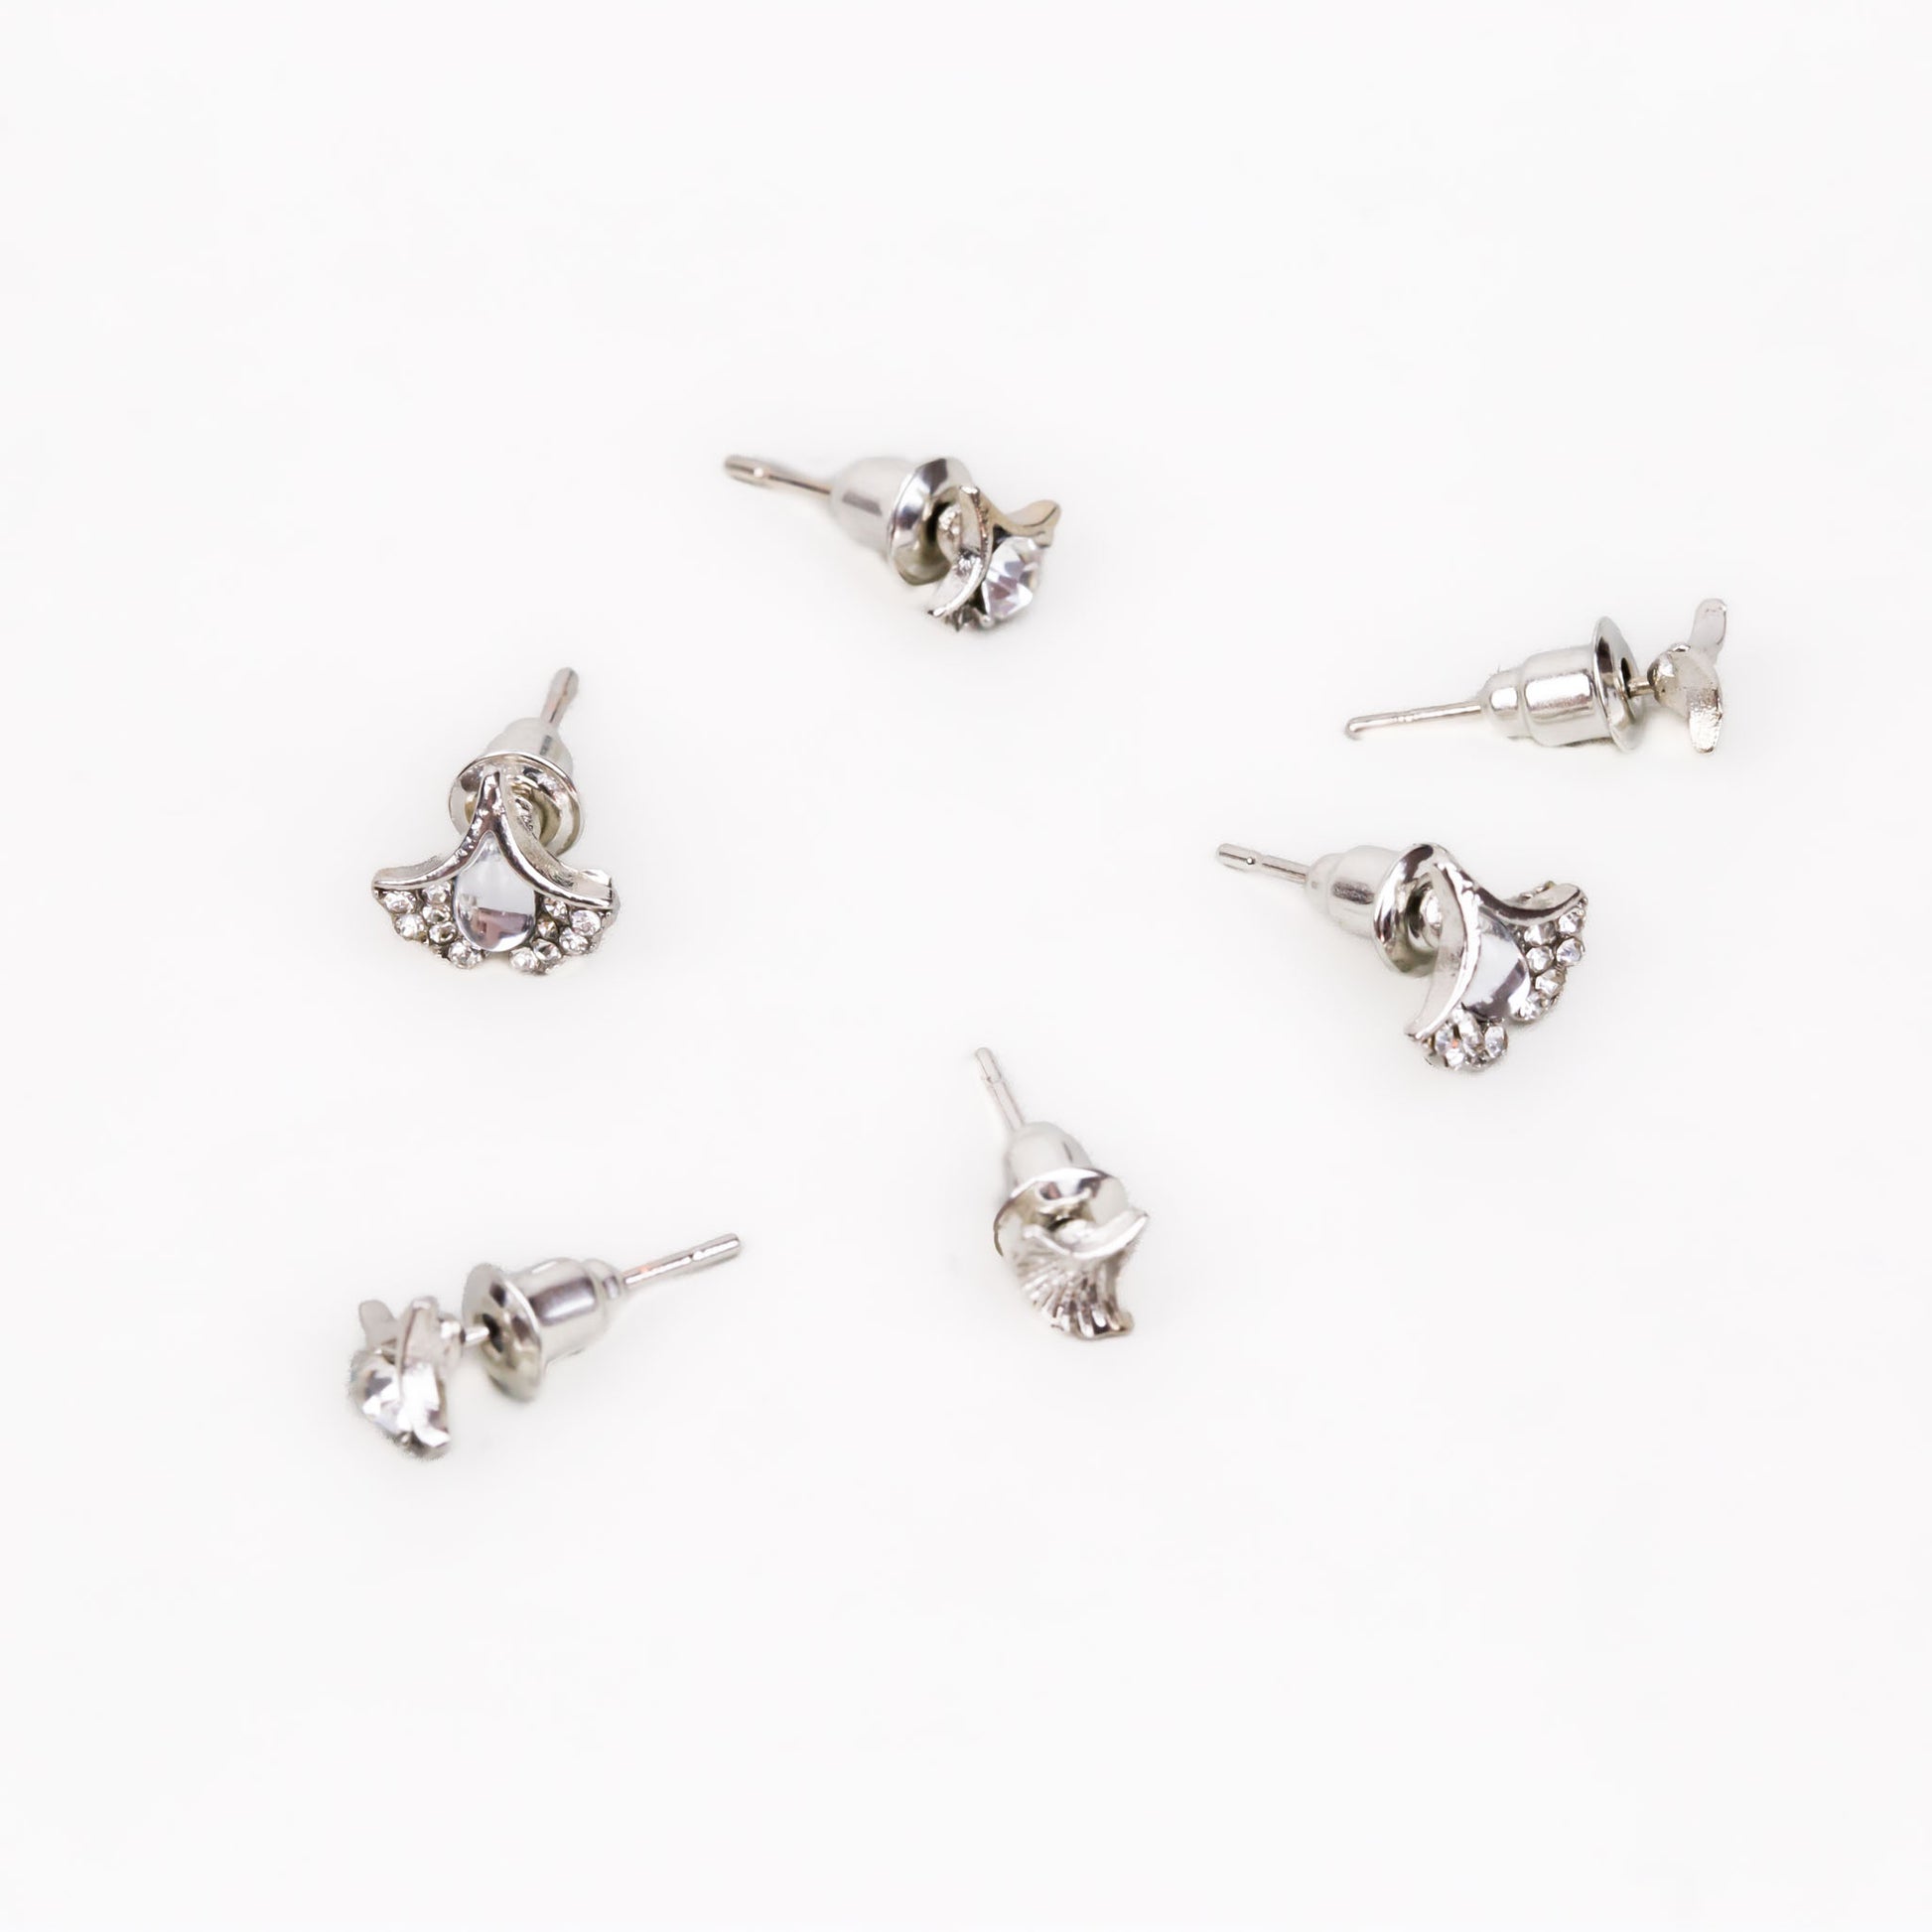 Cercei mici discreți cu petale și ștrasuri, set 3 perechi - Argintiu